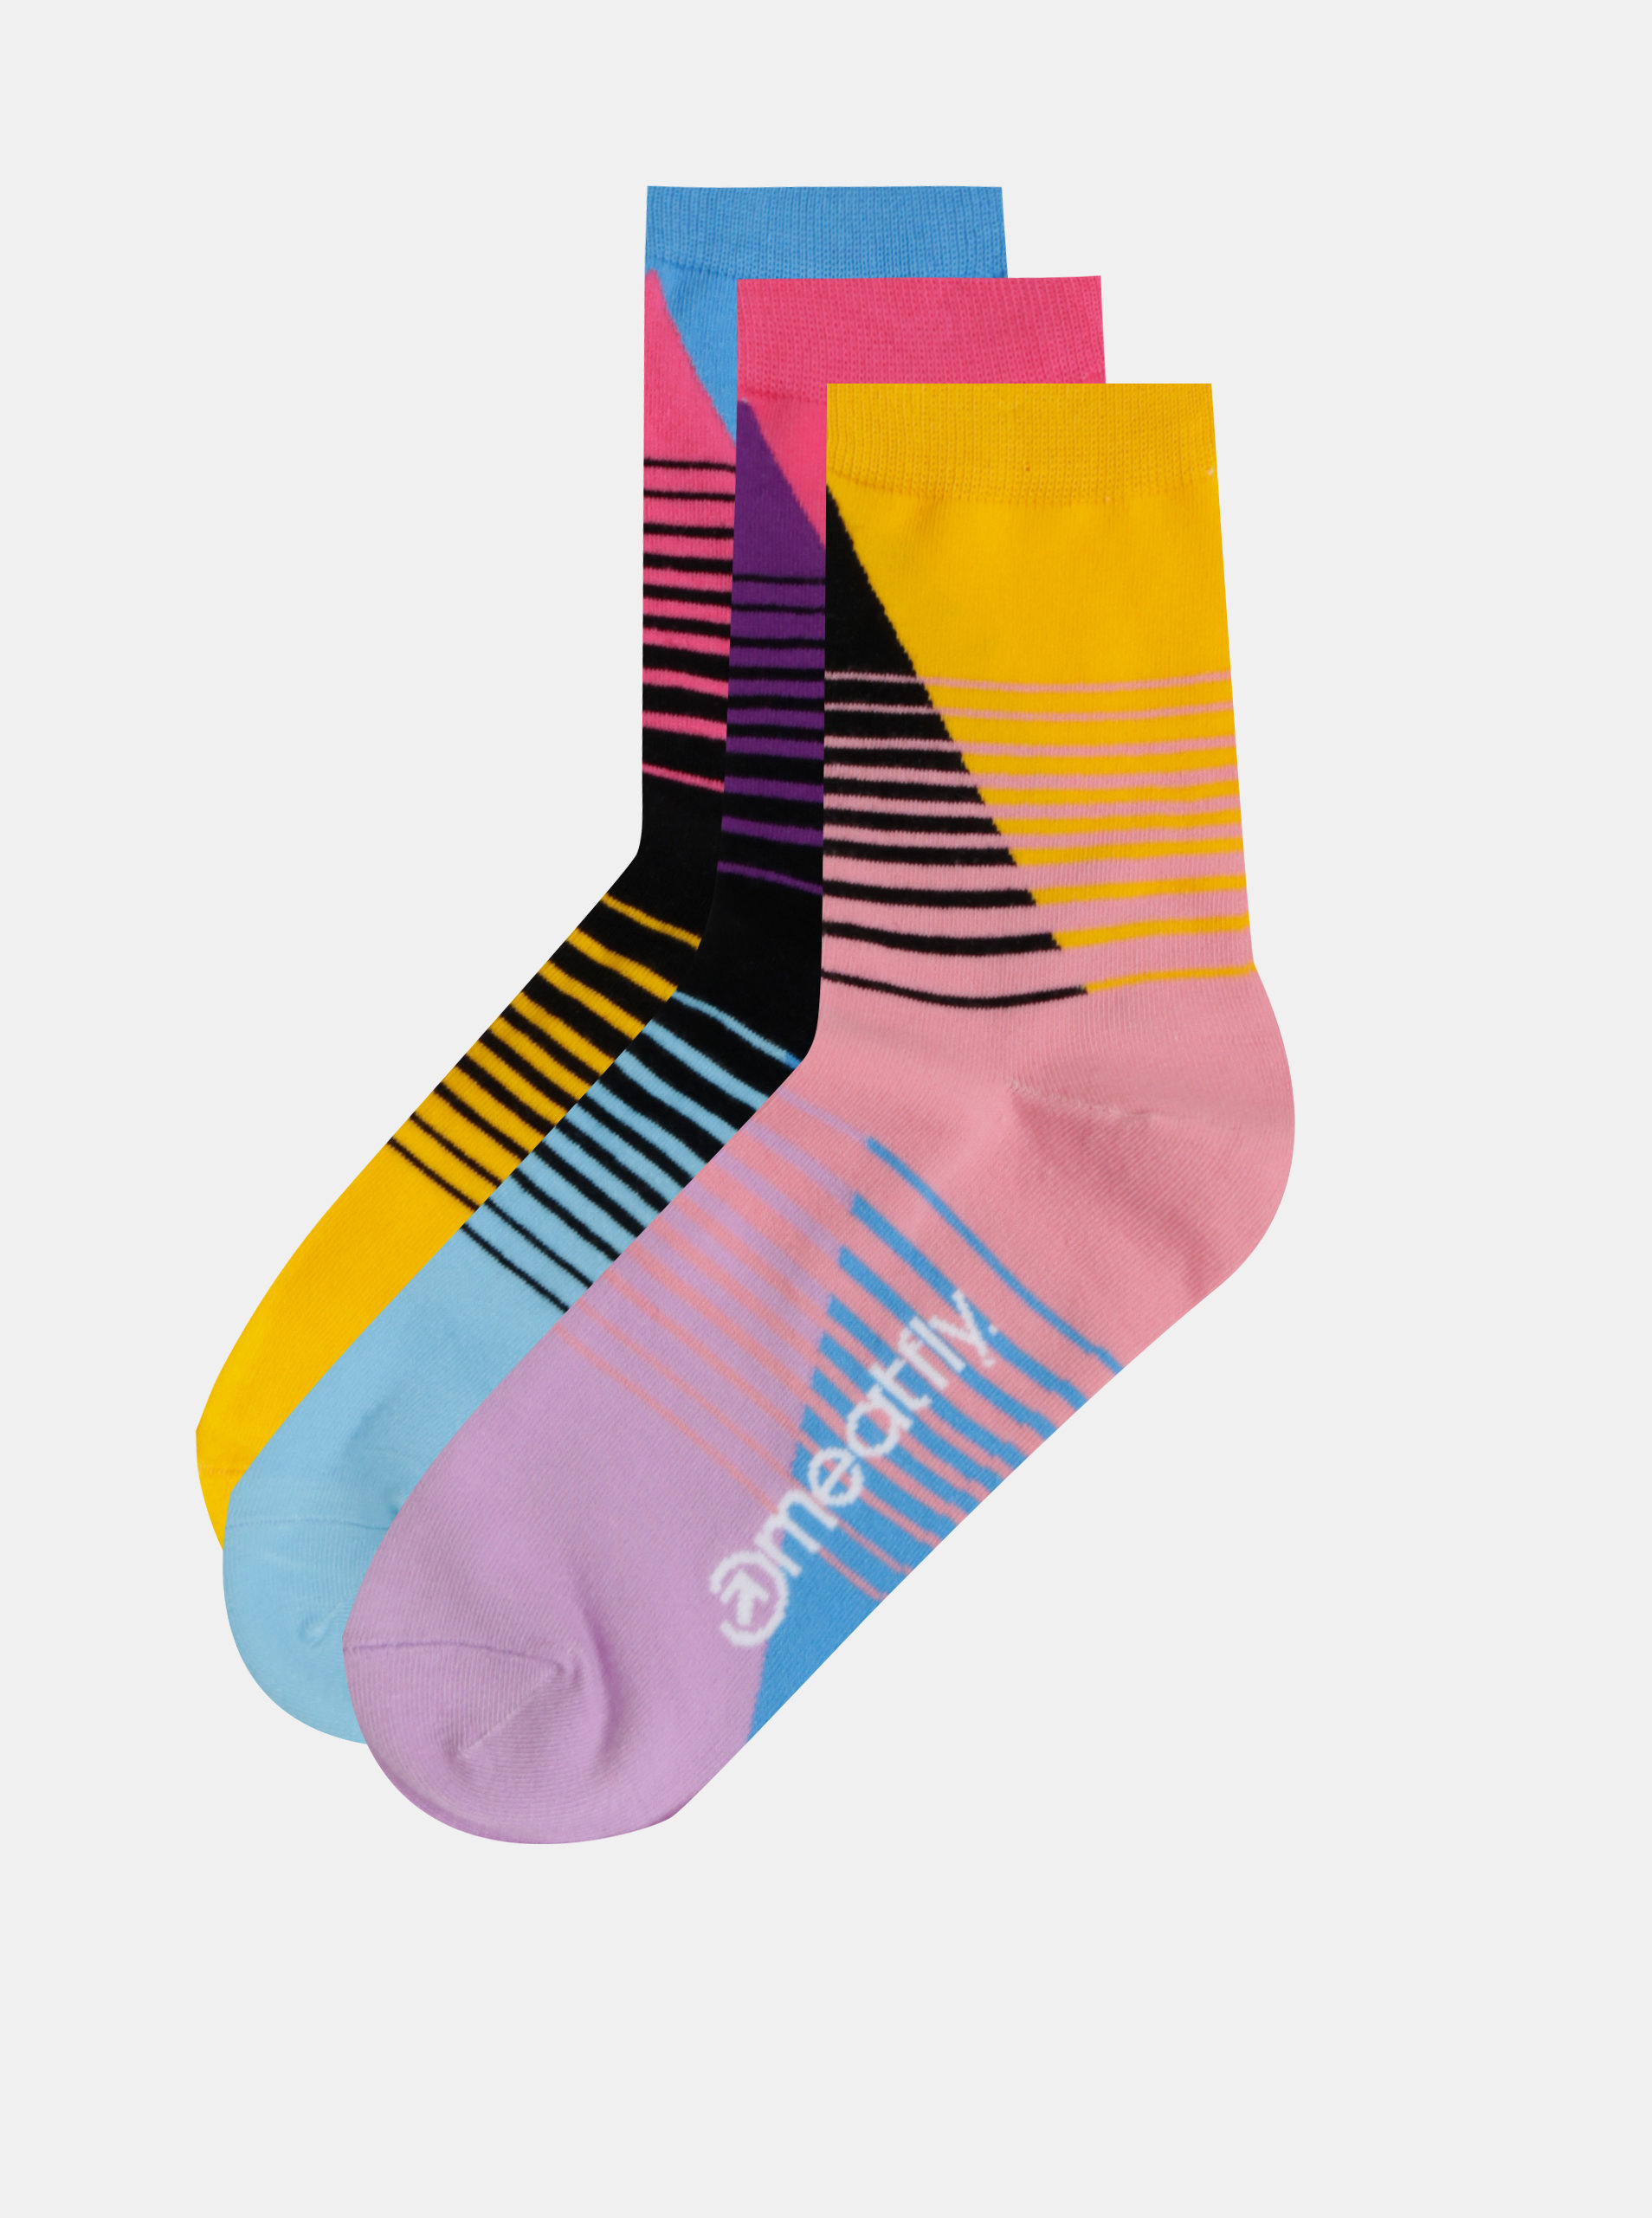 Fotografie Sada tří párů dámských pruhovaných ponožek v růžové, modré a žluté barvě Meatfly Color